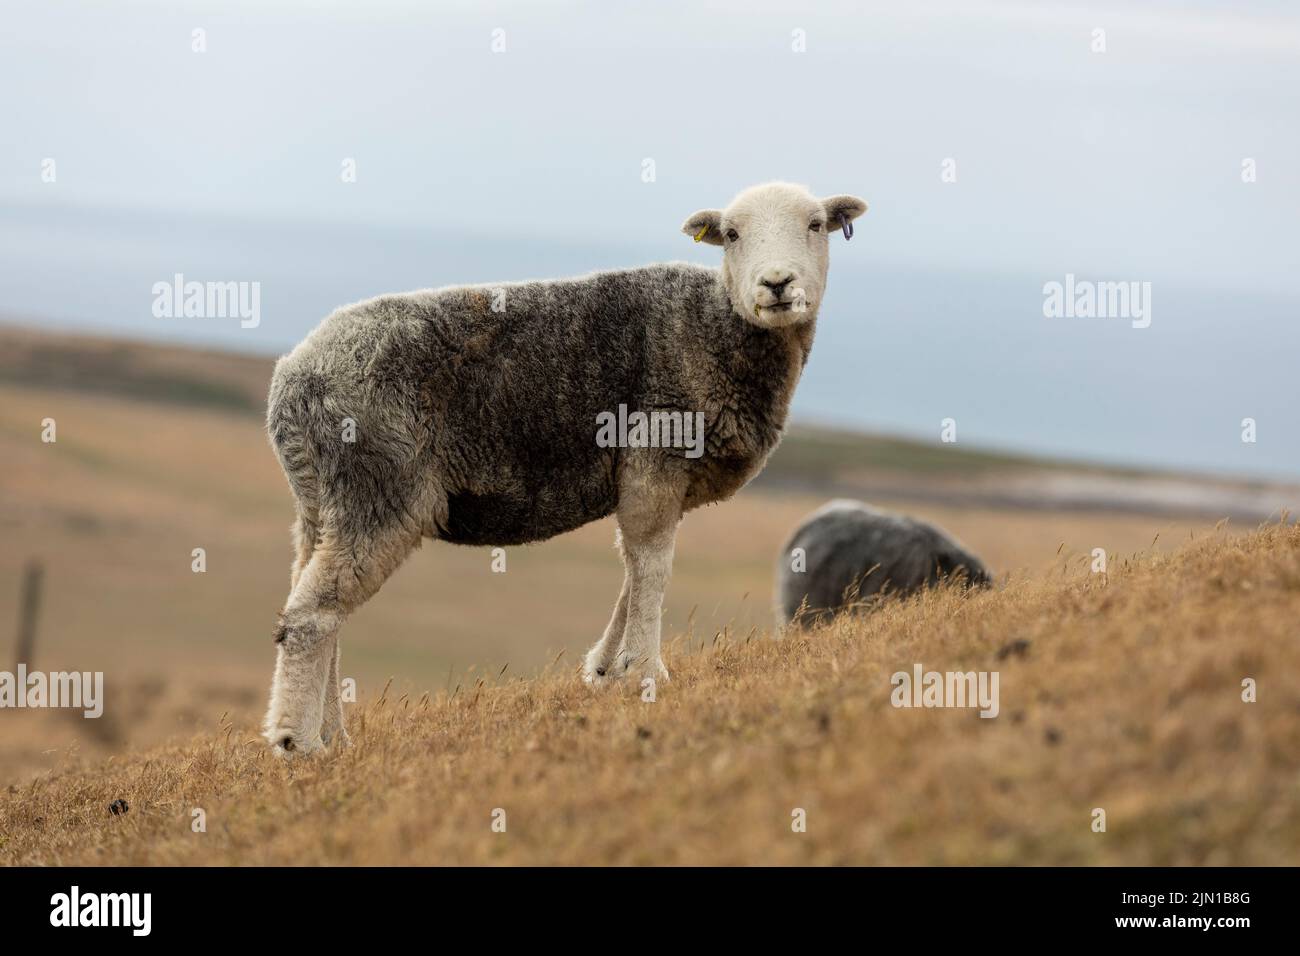 un mouton récemment cisaillé paître sur de l'herbe de montagne gallois très sèche en raison de la sécheresse récente, isolée du fond Banque D'Images